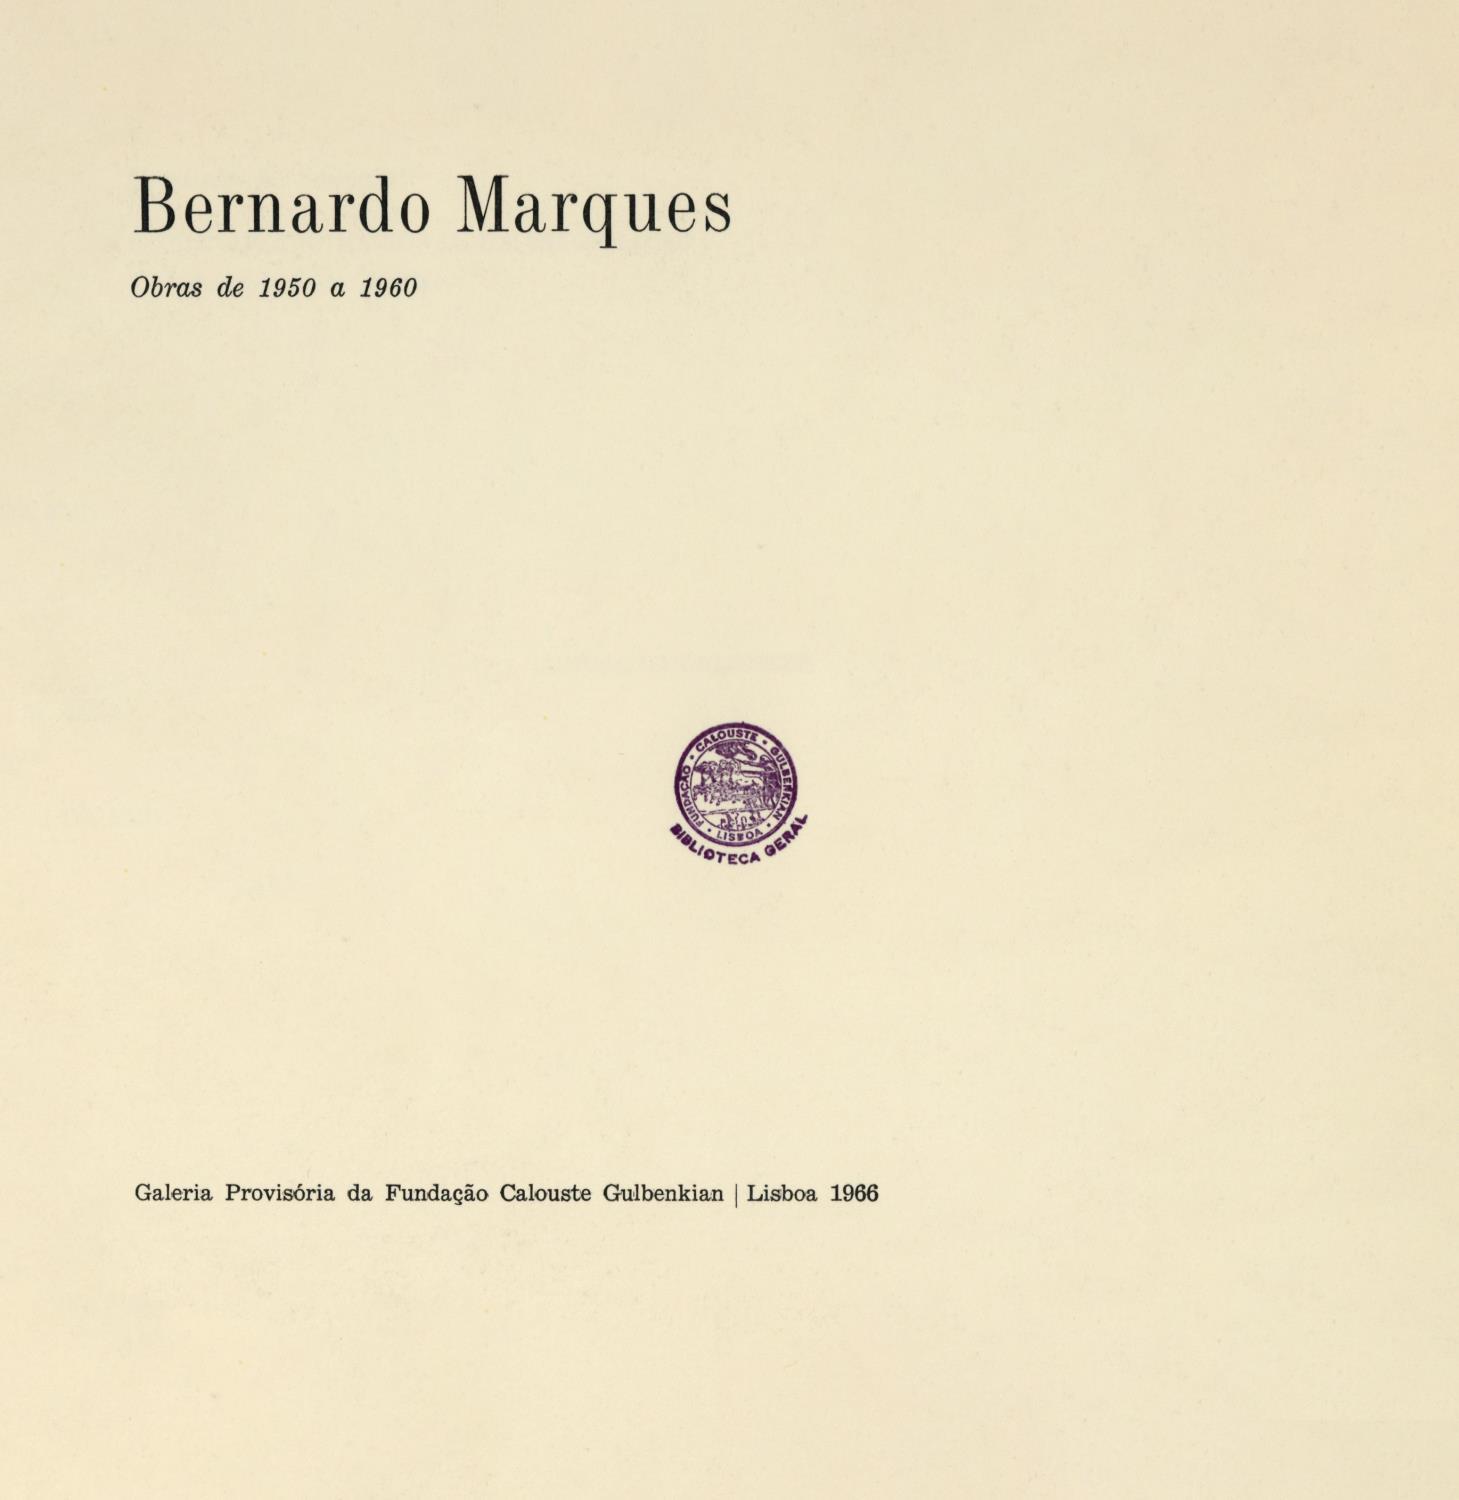 1966_Bernardo_Marques_catalogo_folha_de_rosto_DE1847